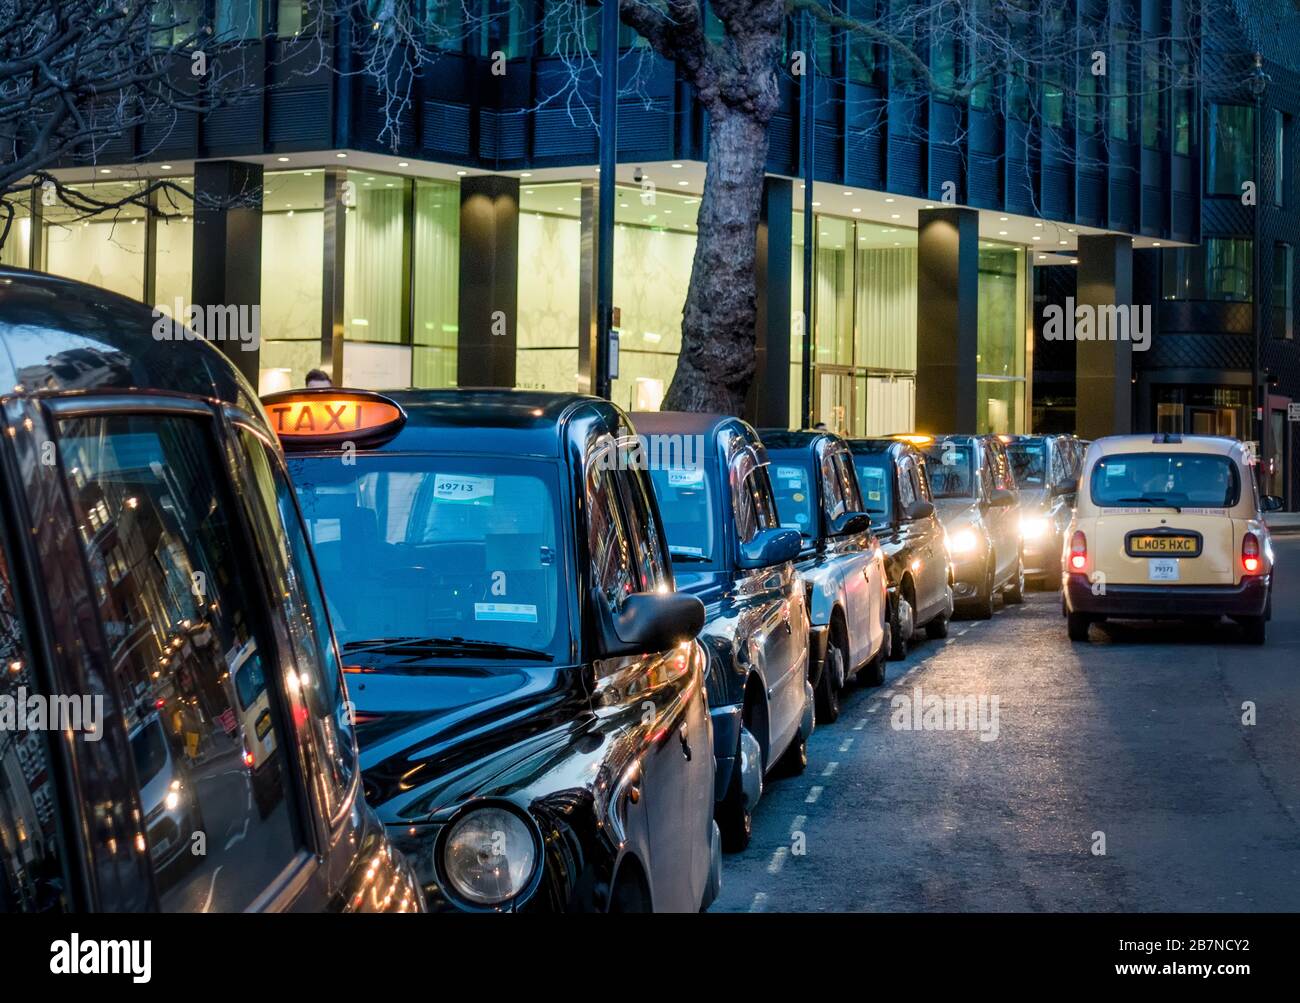 Großbritannien, England, London. Ein Taxistand mit markanten schwarzen Londoner Taxis Stockfoto